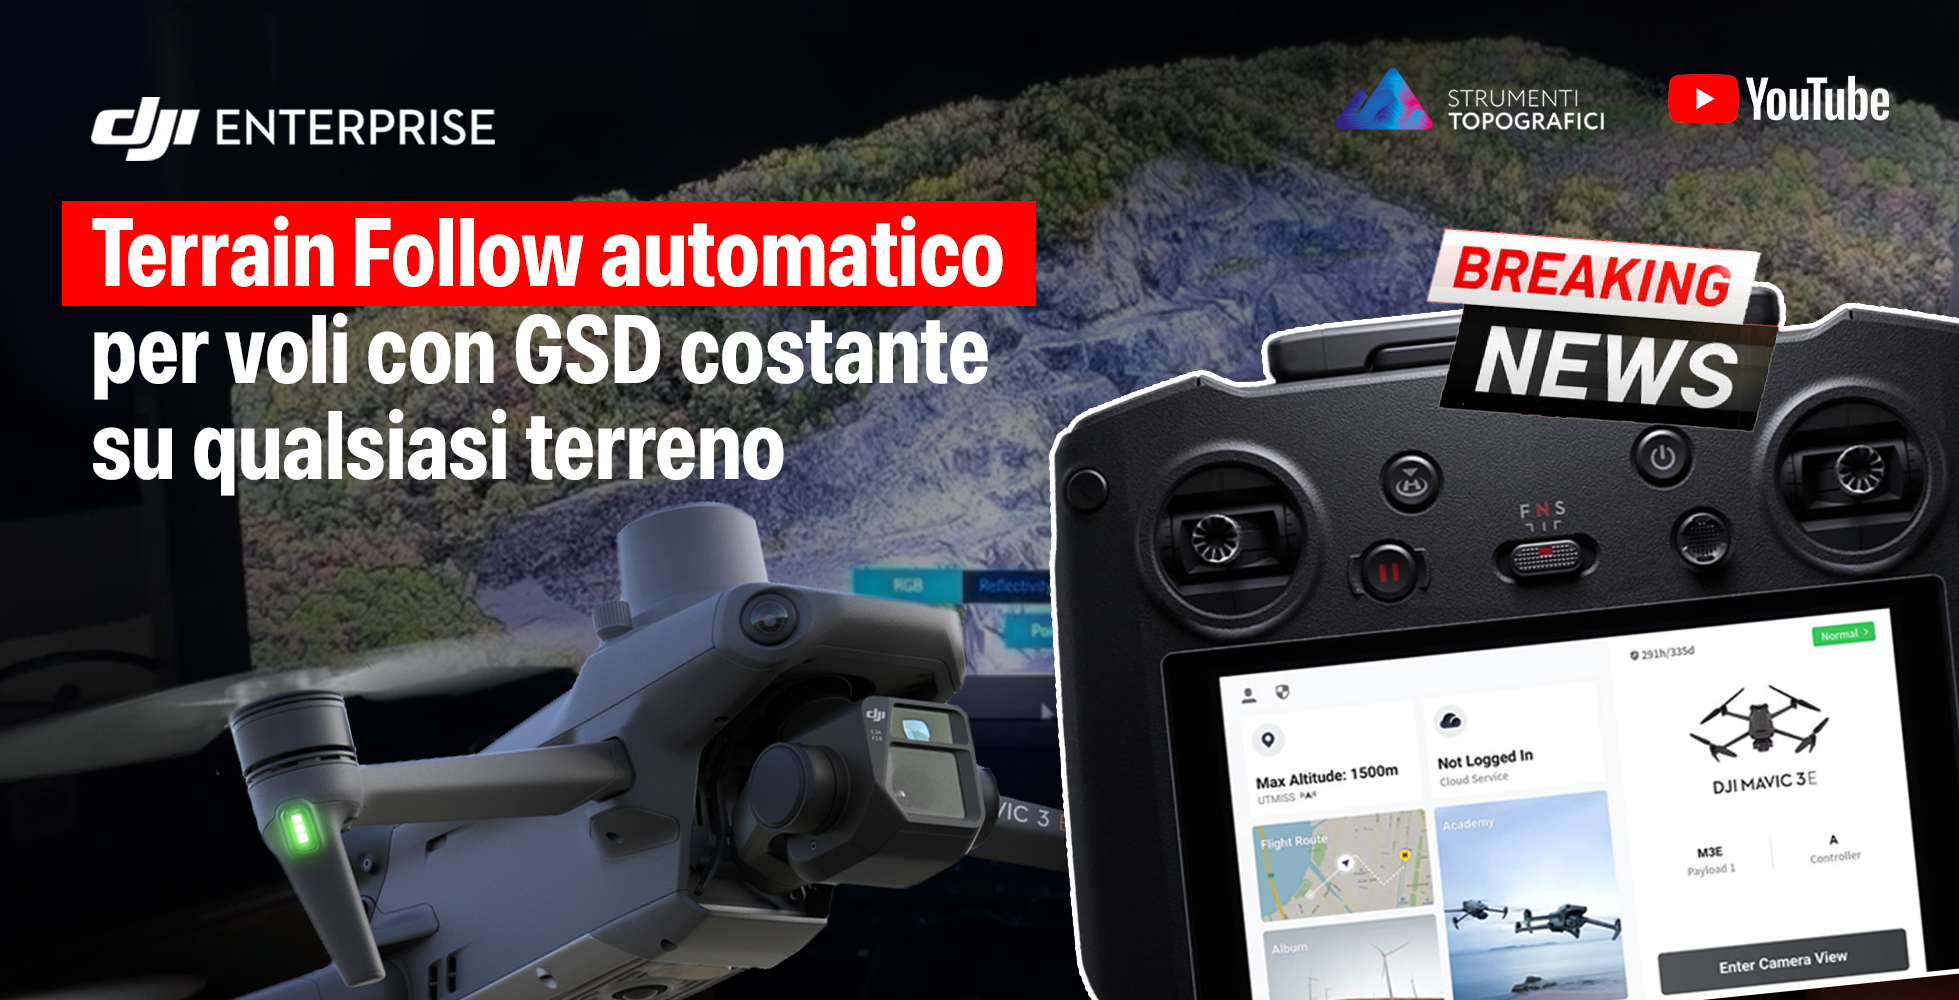 Droni DJI - Terrain Follow automatico per voli con GSD costante su qualsiasi terreno